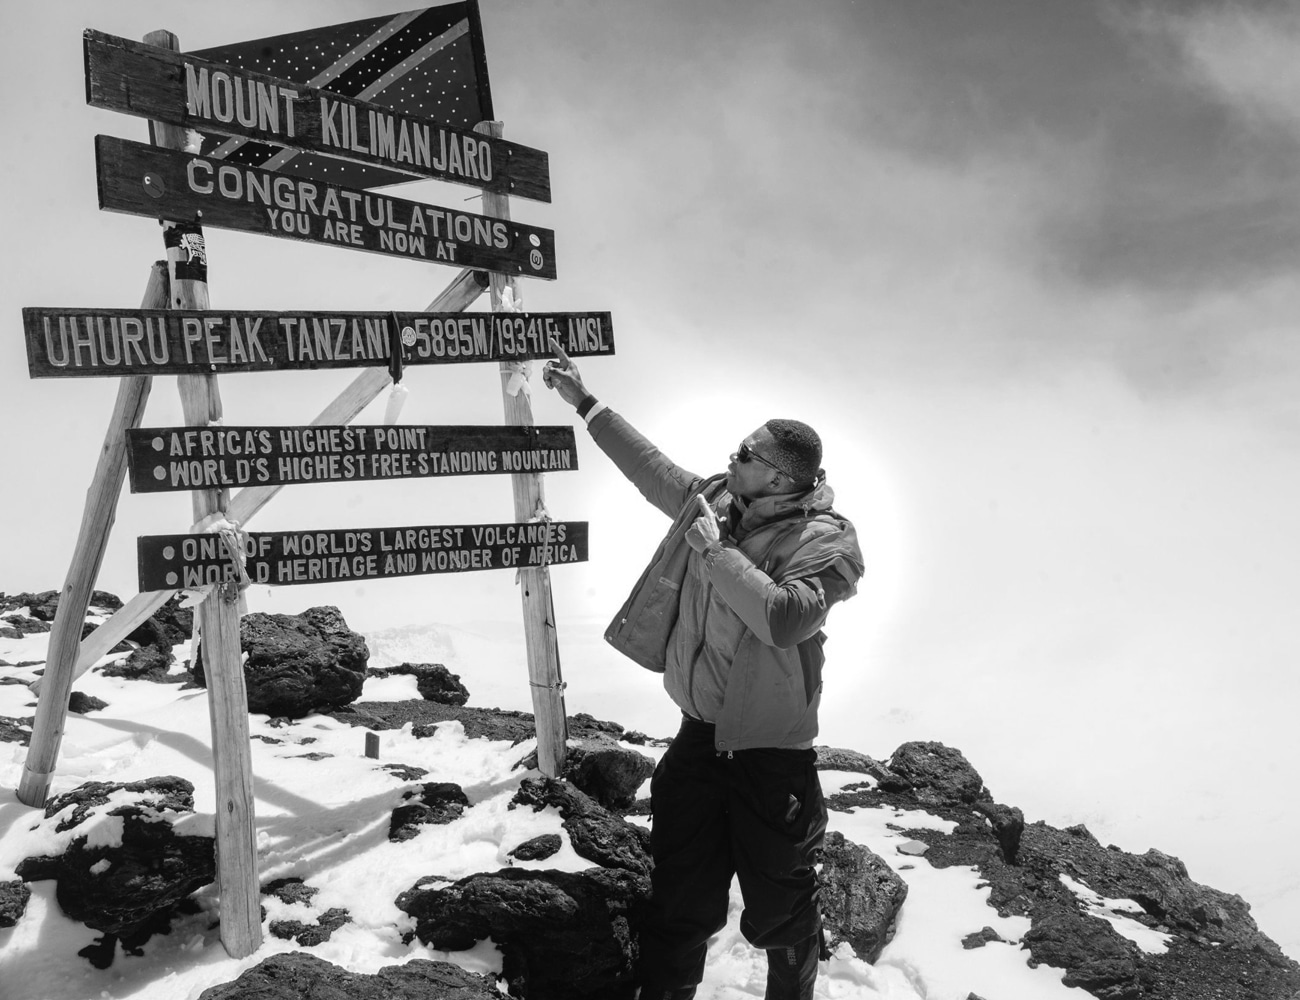 A Man at the Peak of Mount Kilimanjaro